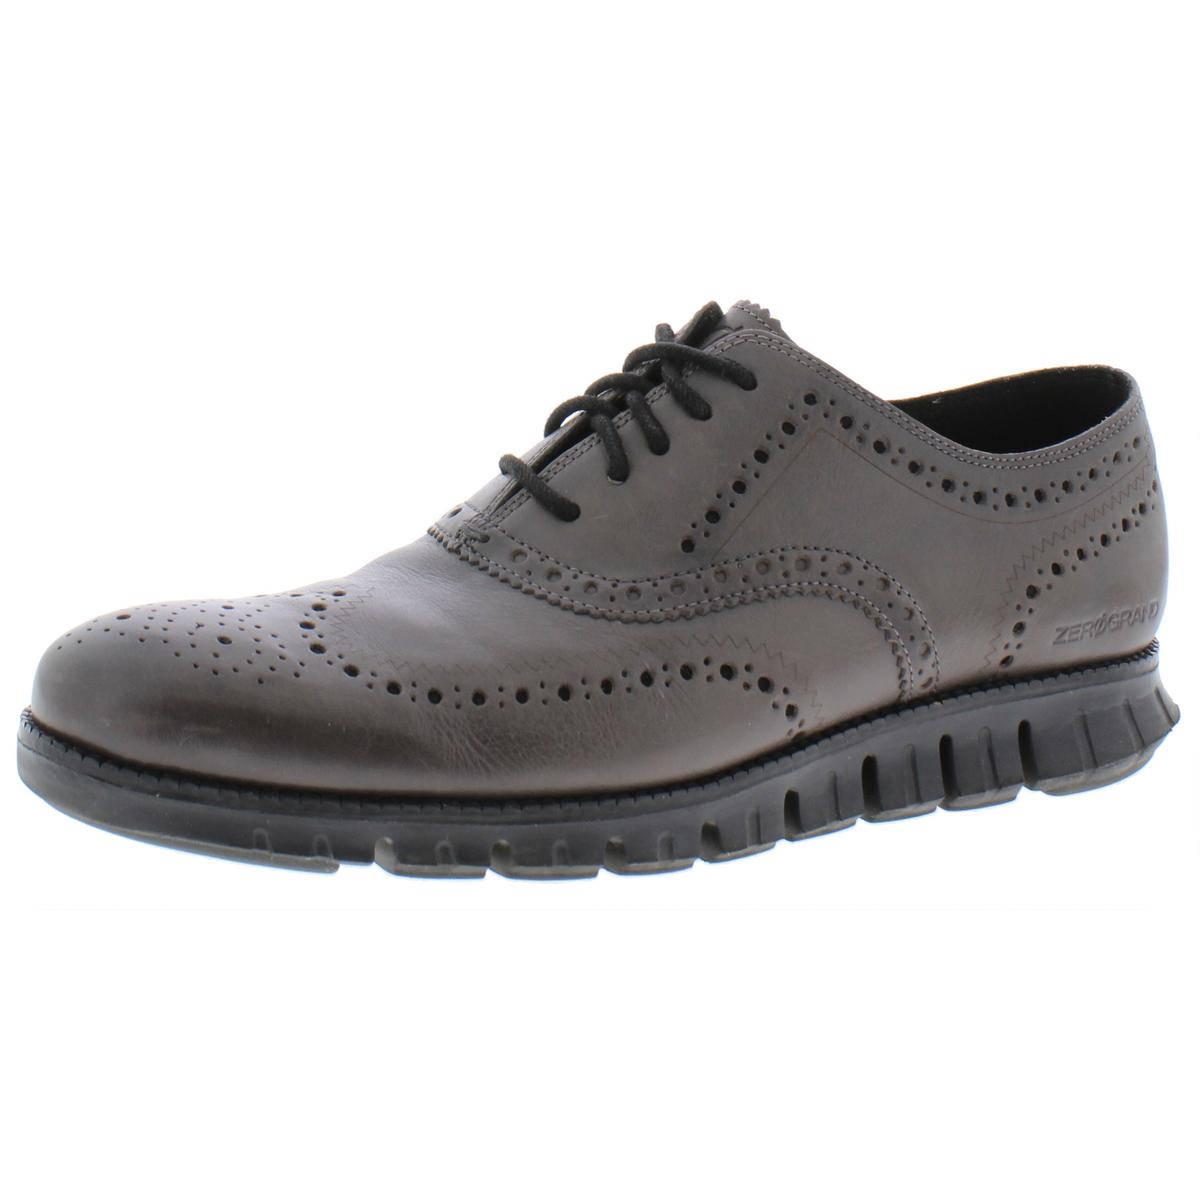 Cole Haan Mens Zerogrand Gray Brogue Flats Oxfords Shoes 10 Medium (D ...